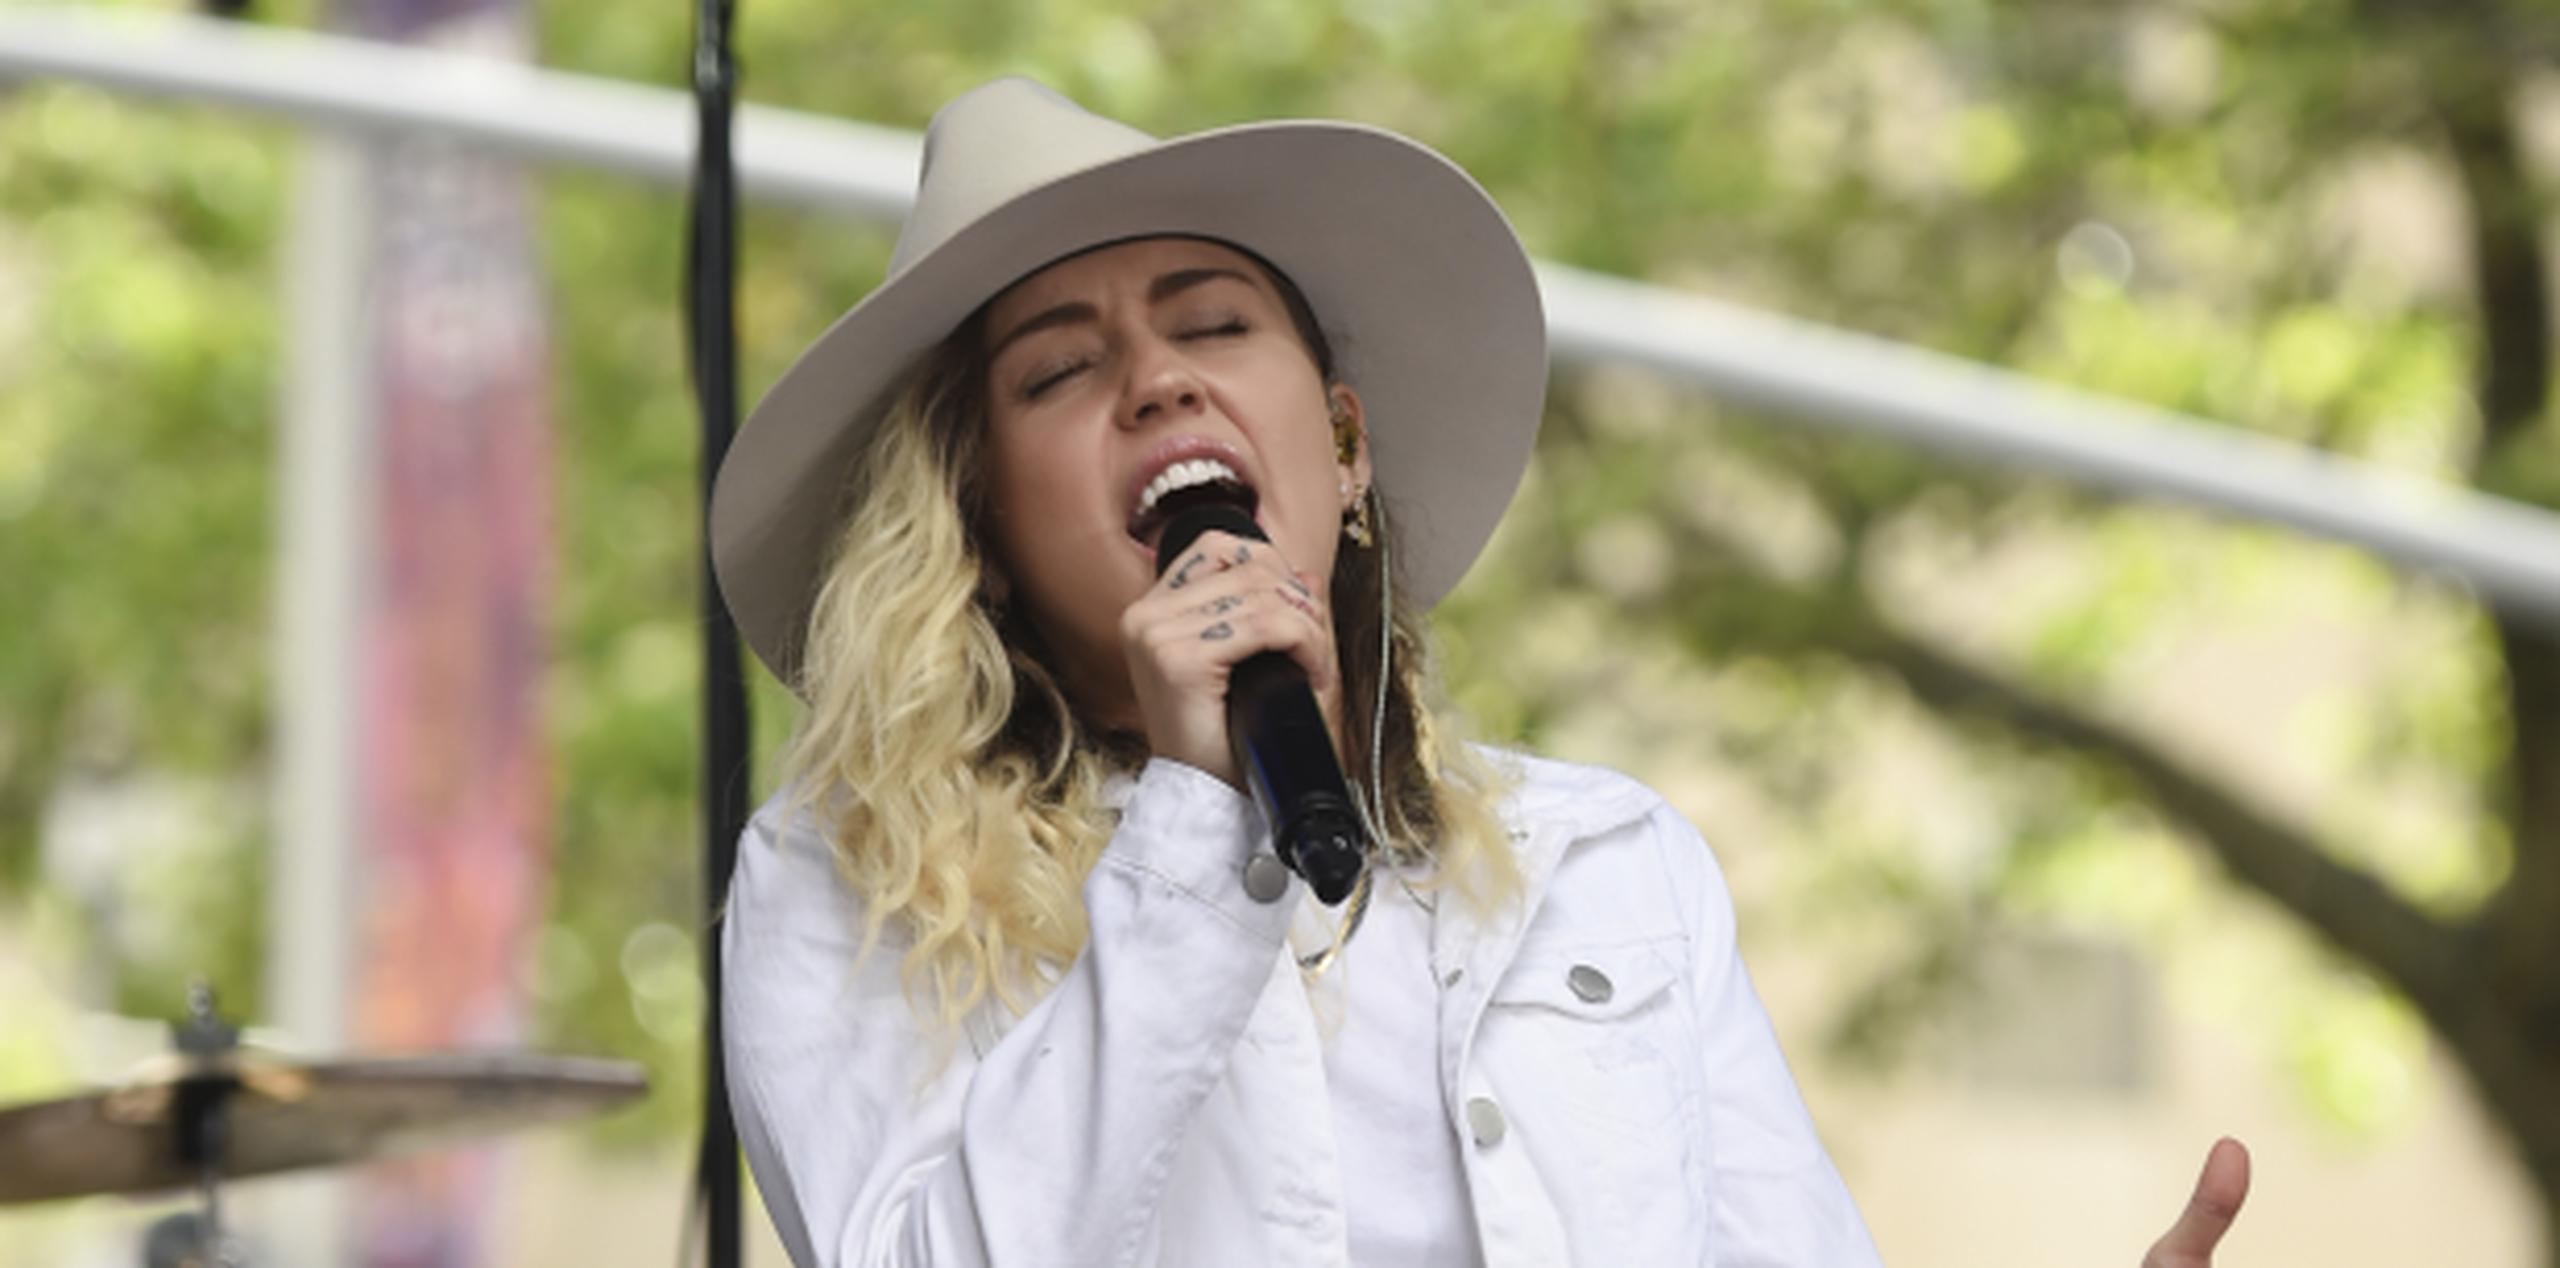 Miley Cyrus contó que tuvo una pesadilla en la que soñó que perdería la vida sobre un escenario. (Evan Agostini / Invision / AP)